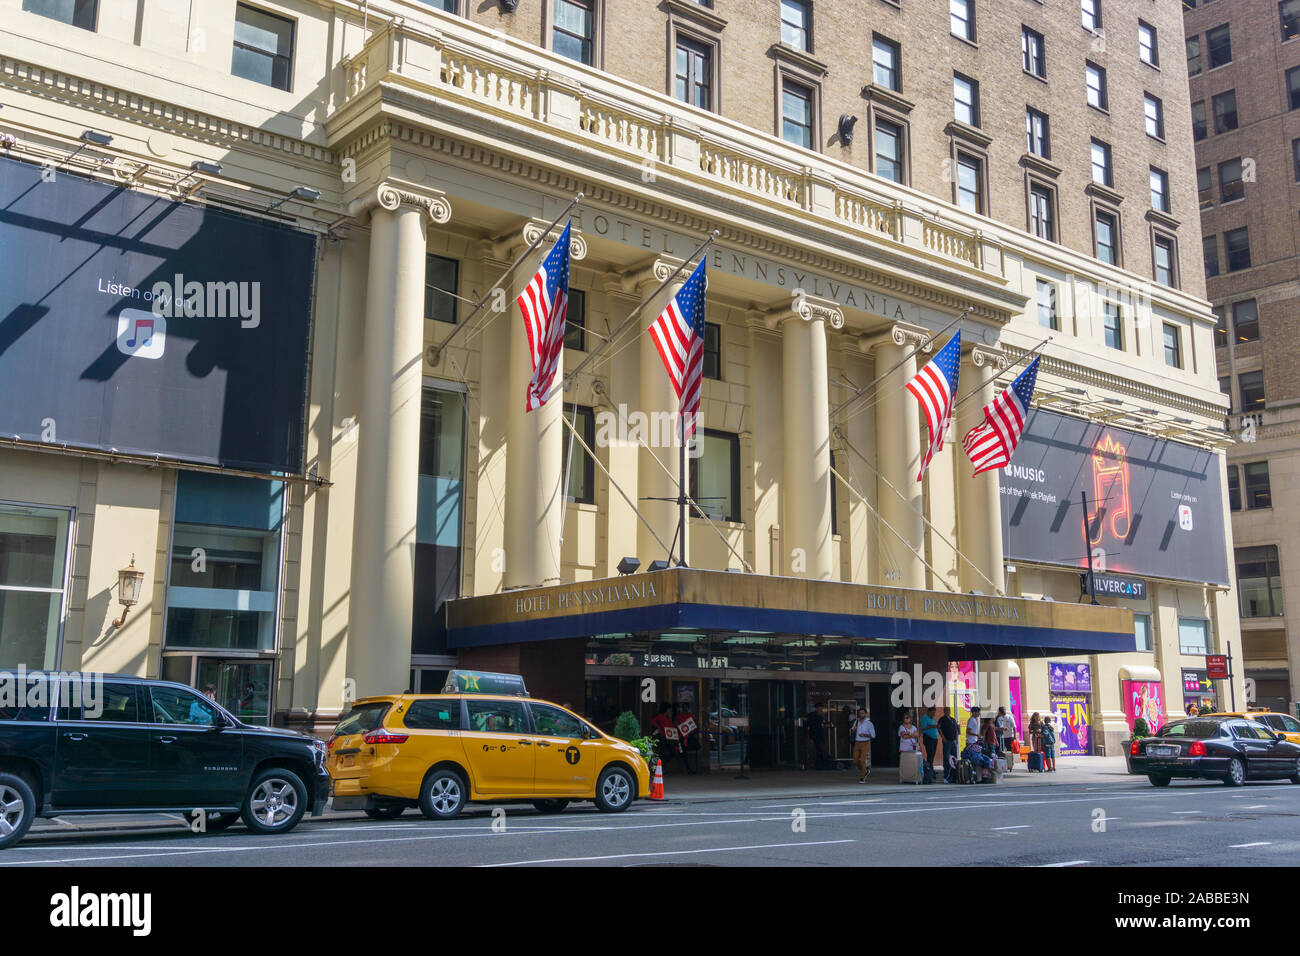 Nueva York, Estados Unidos - 20 de agosto de 2018: El Hotel Pennsylvania es un hotel ubicado a 401 Seventh Avenue en Manhattan, Ciudad de Nueva York. Foto de stock